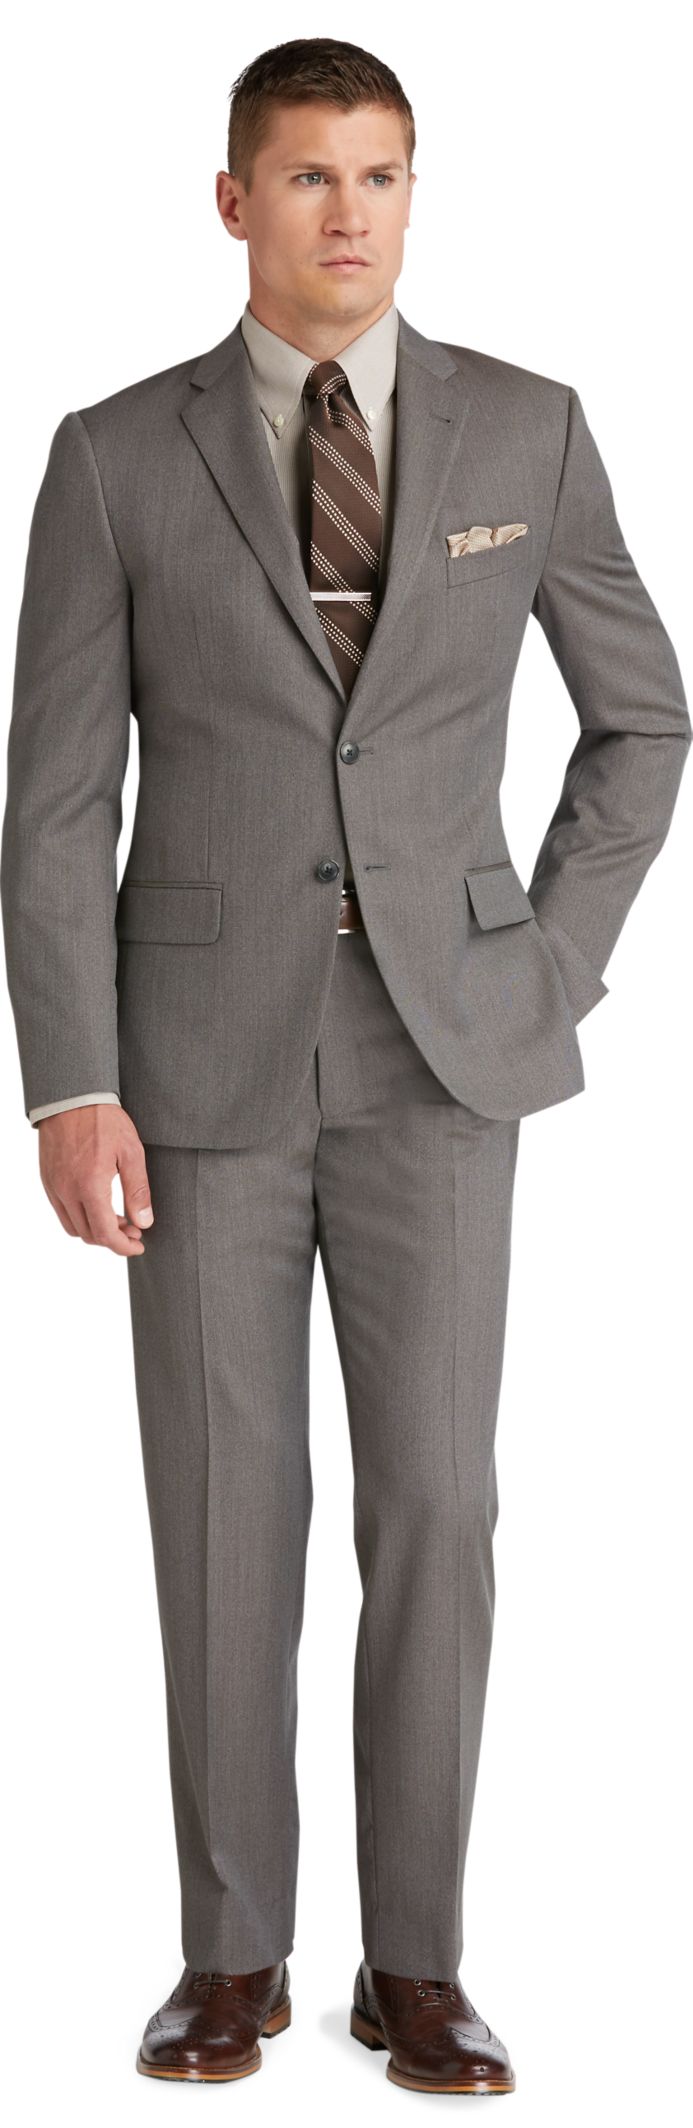 Slim Fit Suits | Shop Men's Skinny Fit Suits | JoS. A. Bank Clothiers